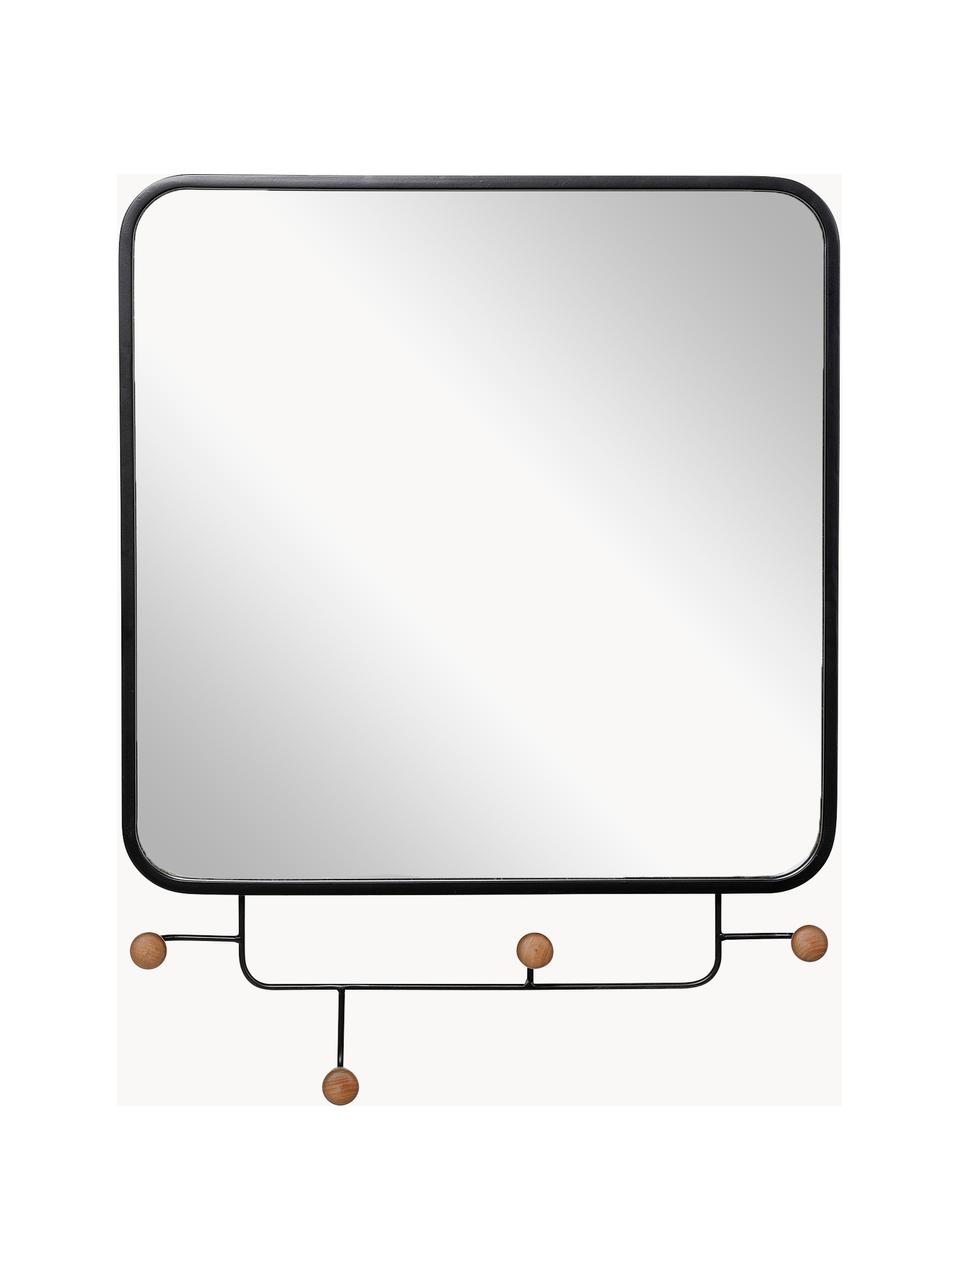 Wandgarderobe Gina mit Spiegel, Gestell: Metall, beschichtet, Spiegelfläche: Spiegelglas, Haken: Tannenholz, lackiert, Schwarz, Tannenholz, B 50 x H 65 cm